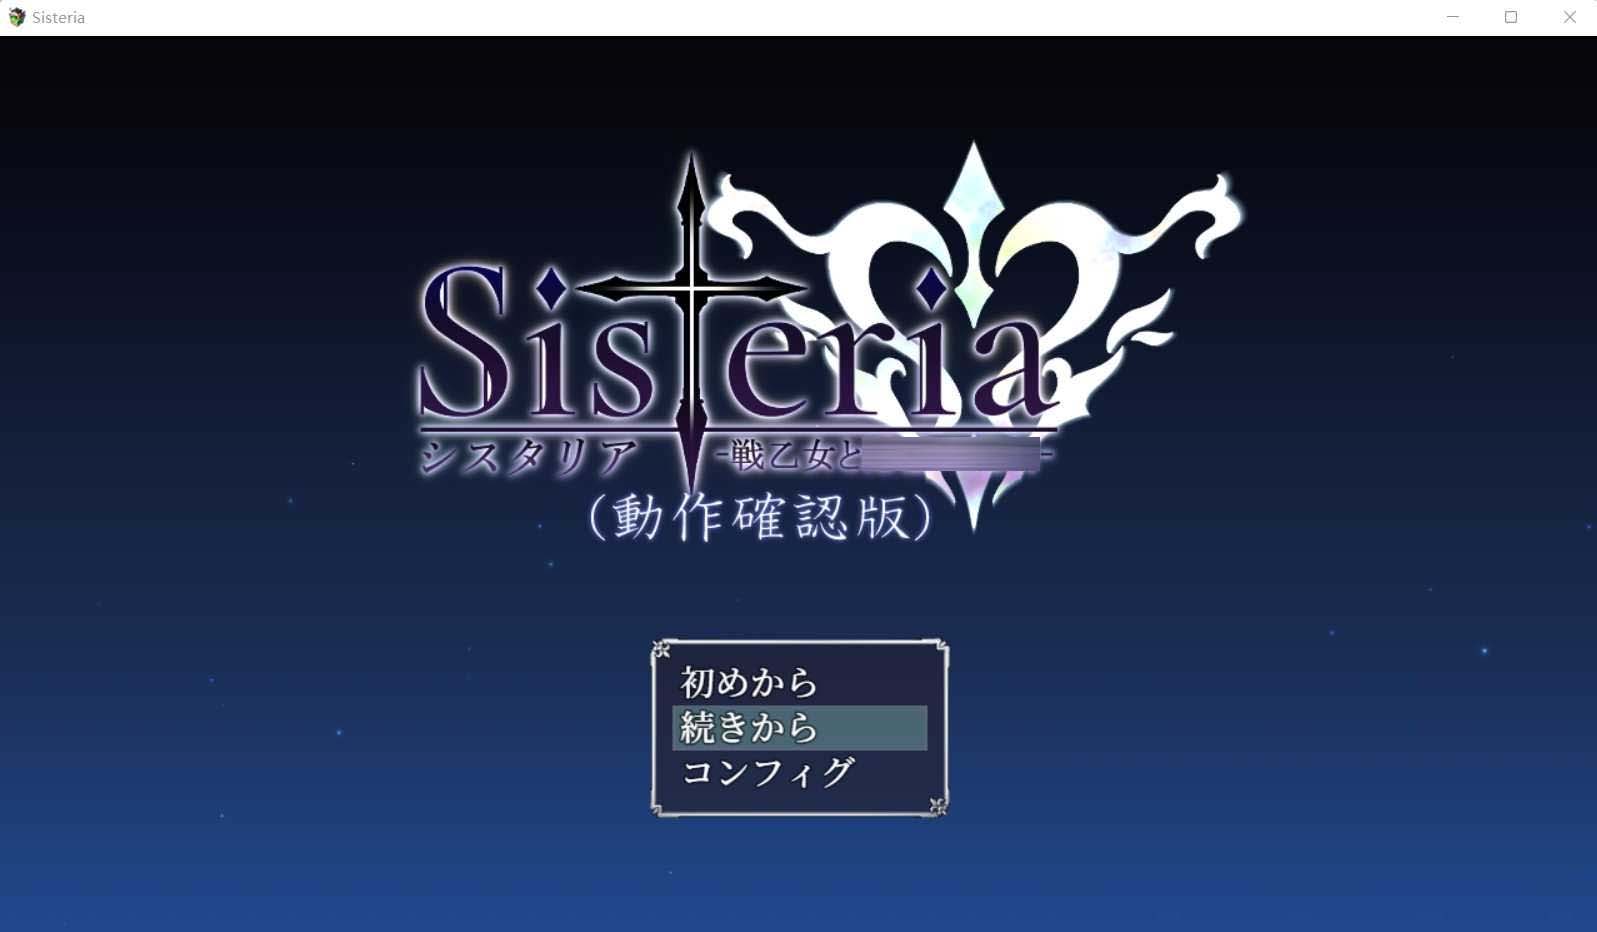 [神作RPG]Sisteria Ver0.1.2 汉化动作确认版 /バグ報告所[百度网盘]